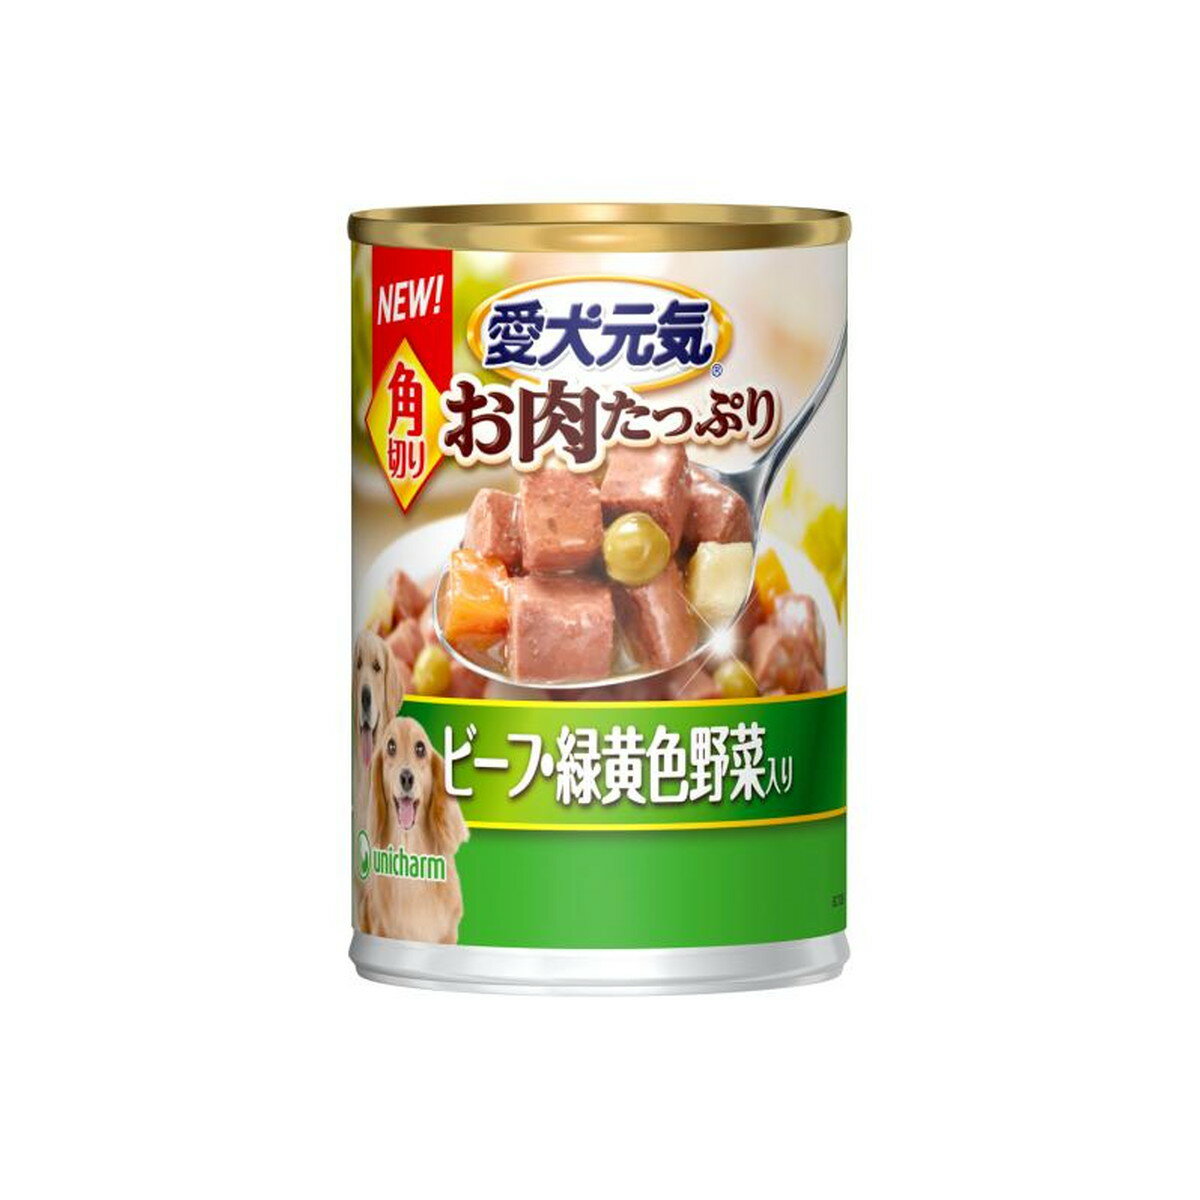 【送料込】ユニ チャーム 愛犬元気 缶 角切り ビーフ 緑黄野菜入り 375g 1個